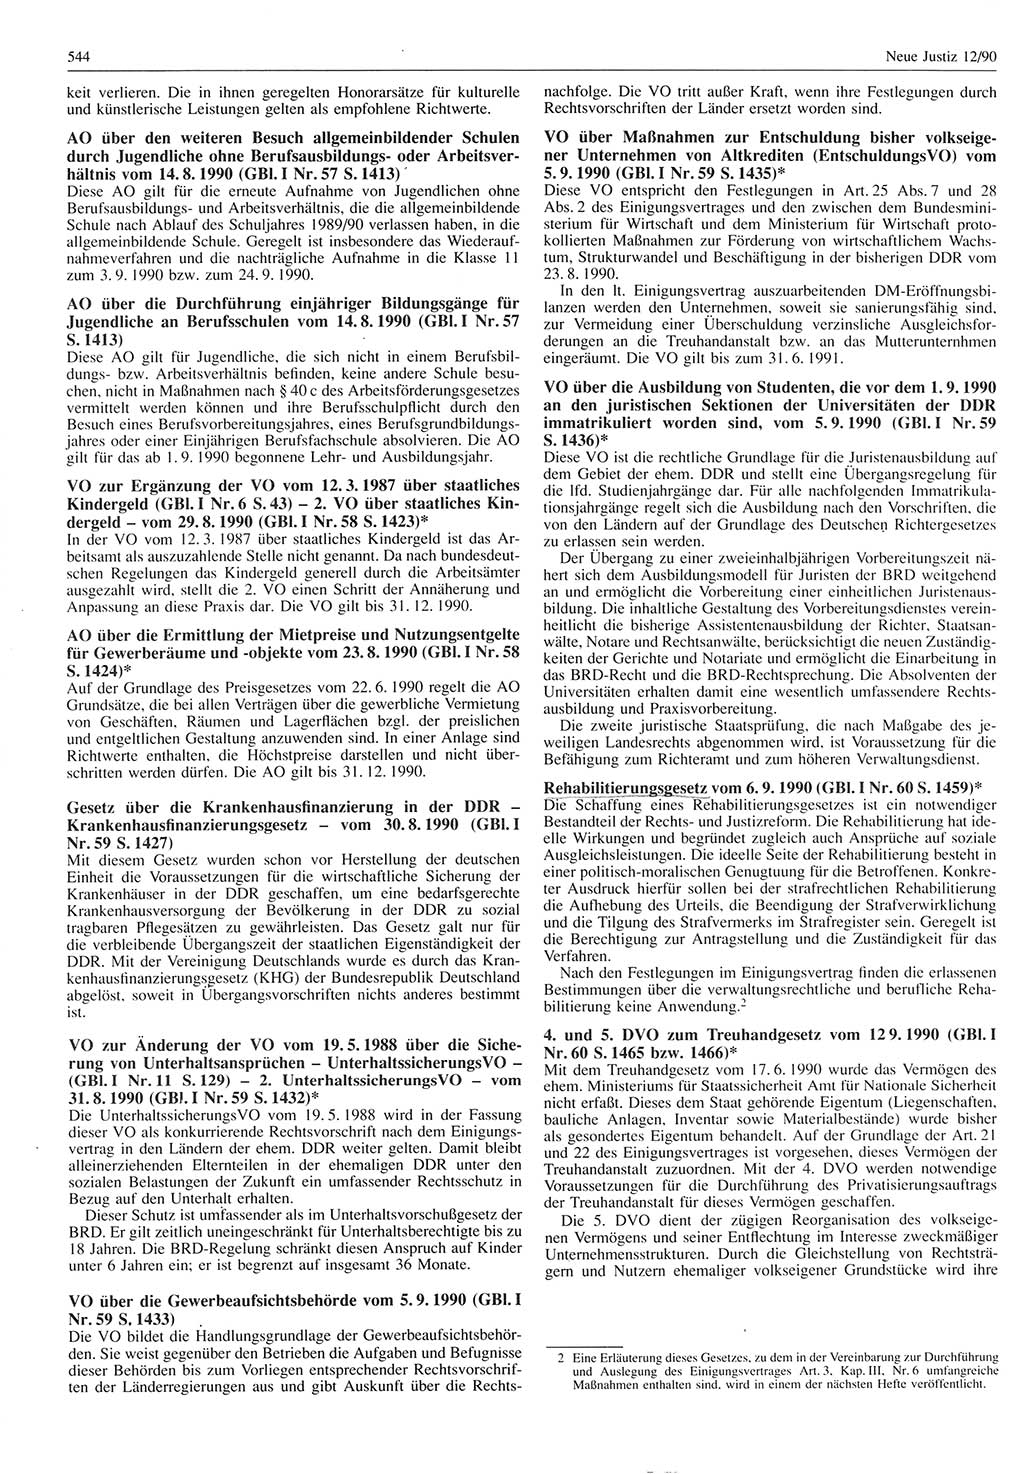 Neue Justiz (NJ), Zeitschrift für Rechtsetzung und Rechtsanwendung [Deutsche Demokratische Republik (DDR)], 44. Jahrgang 1990, Seite 544 (NJ DDR 1990, S. 544)